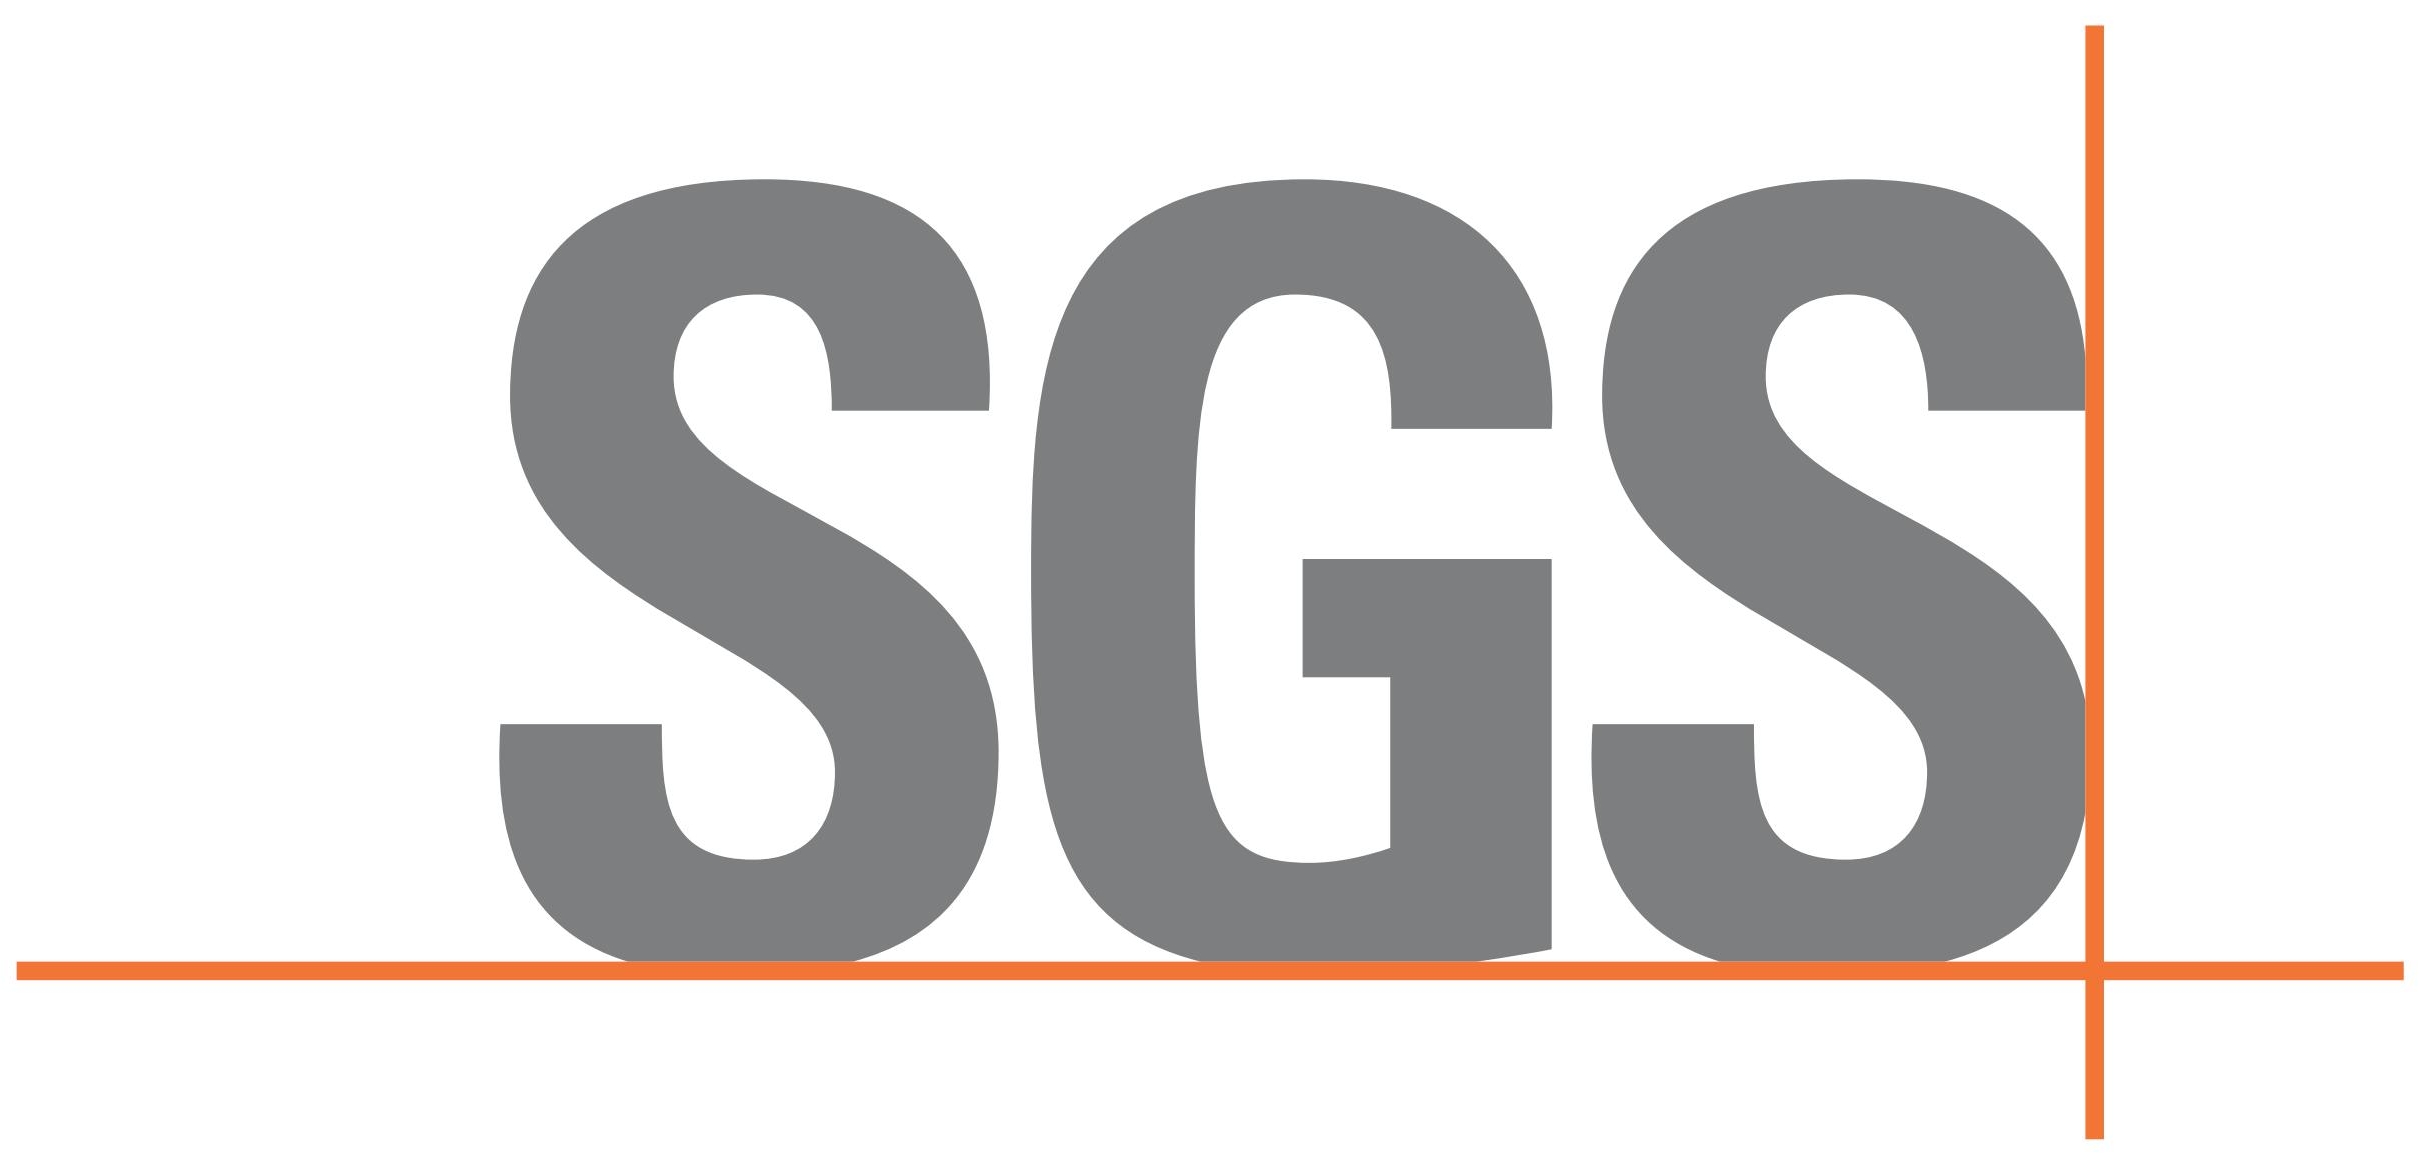 Societe General Surveillance (SGS)